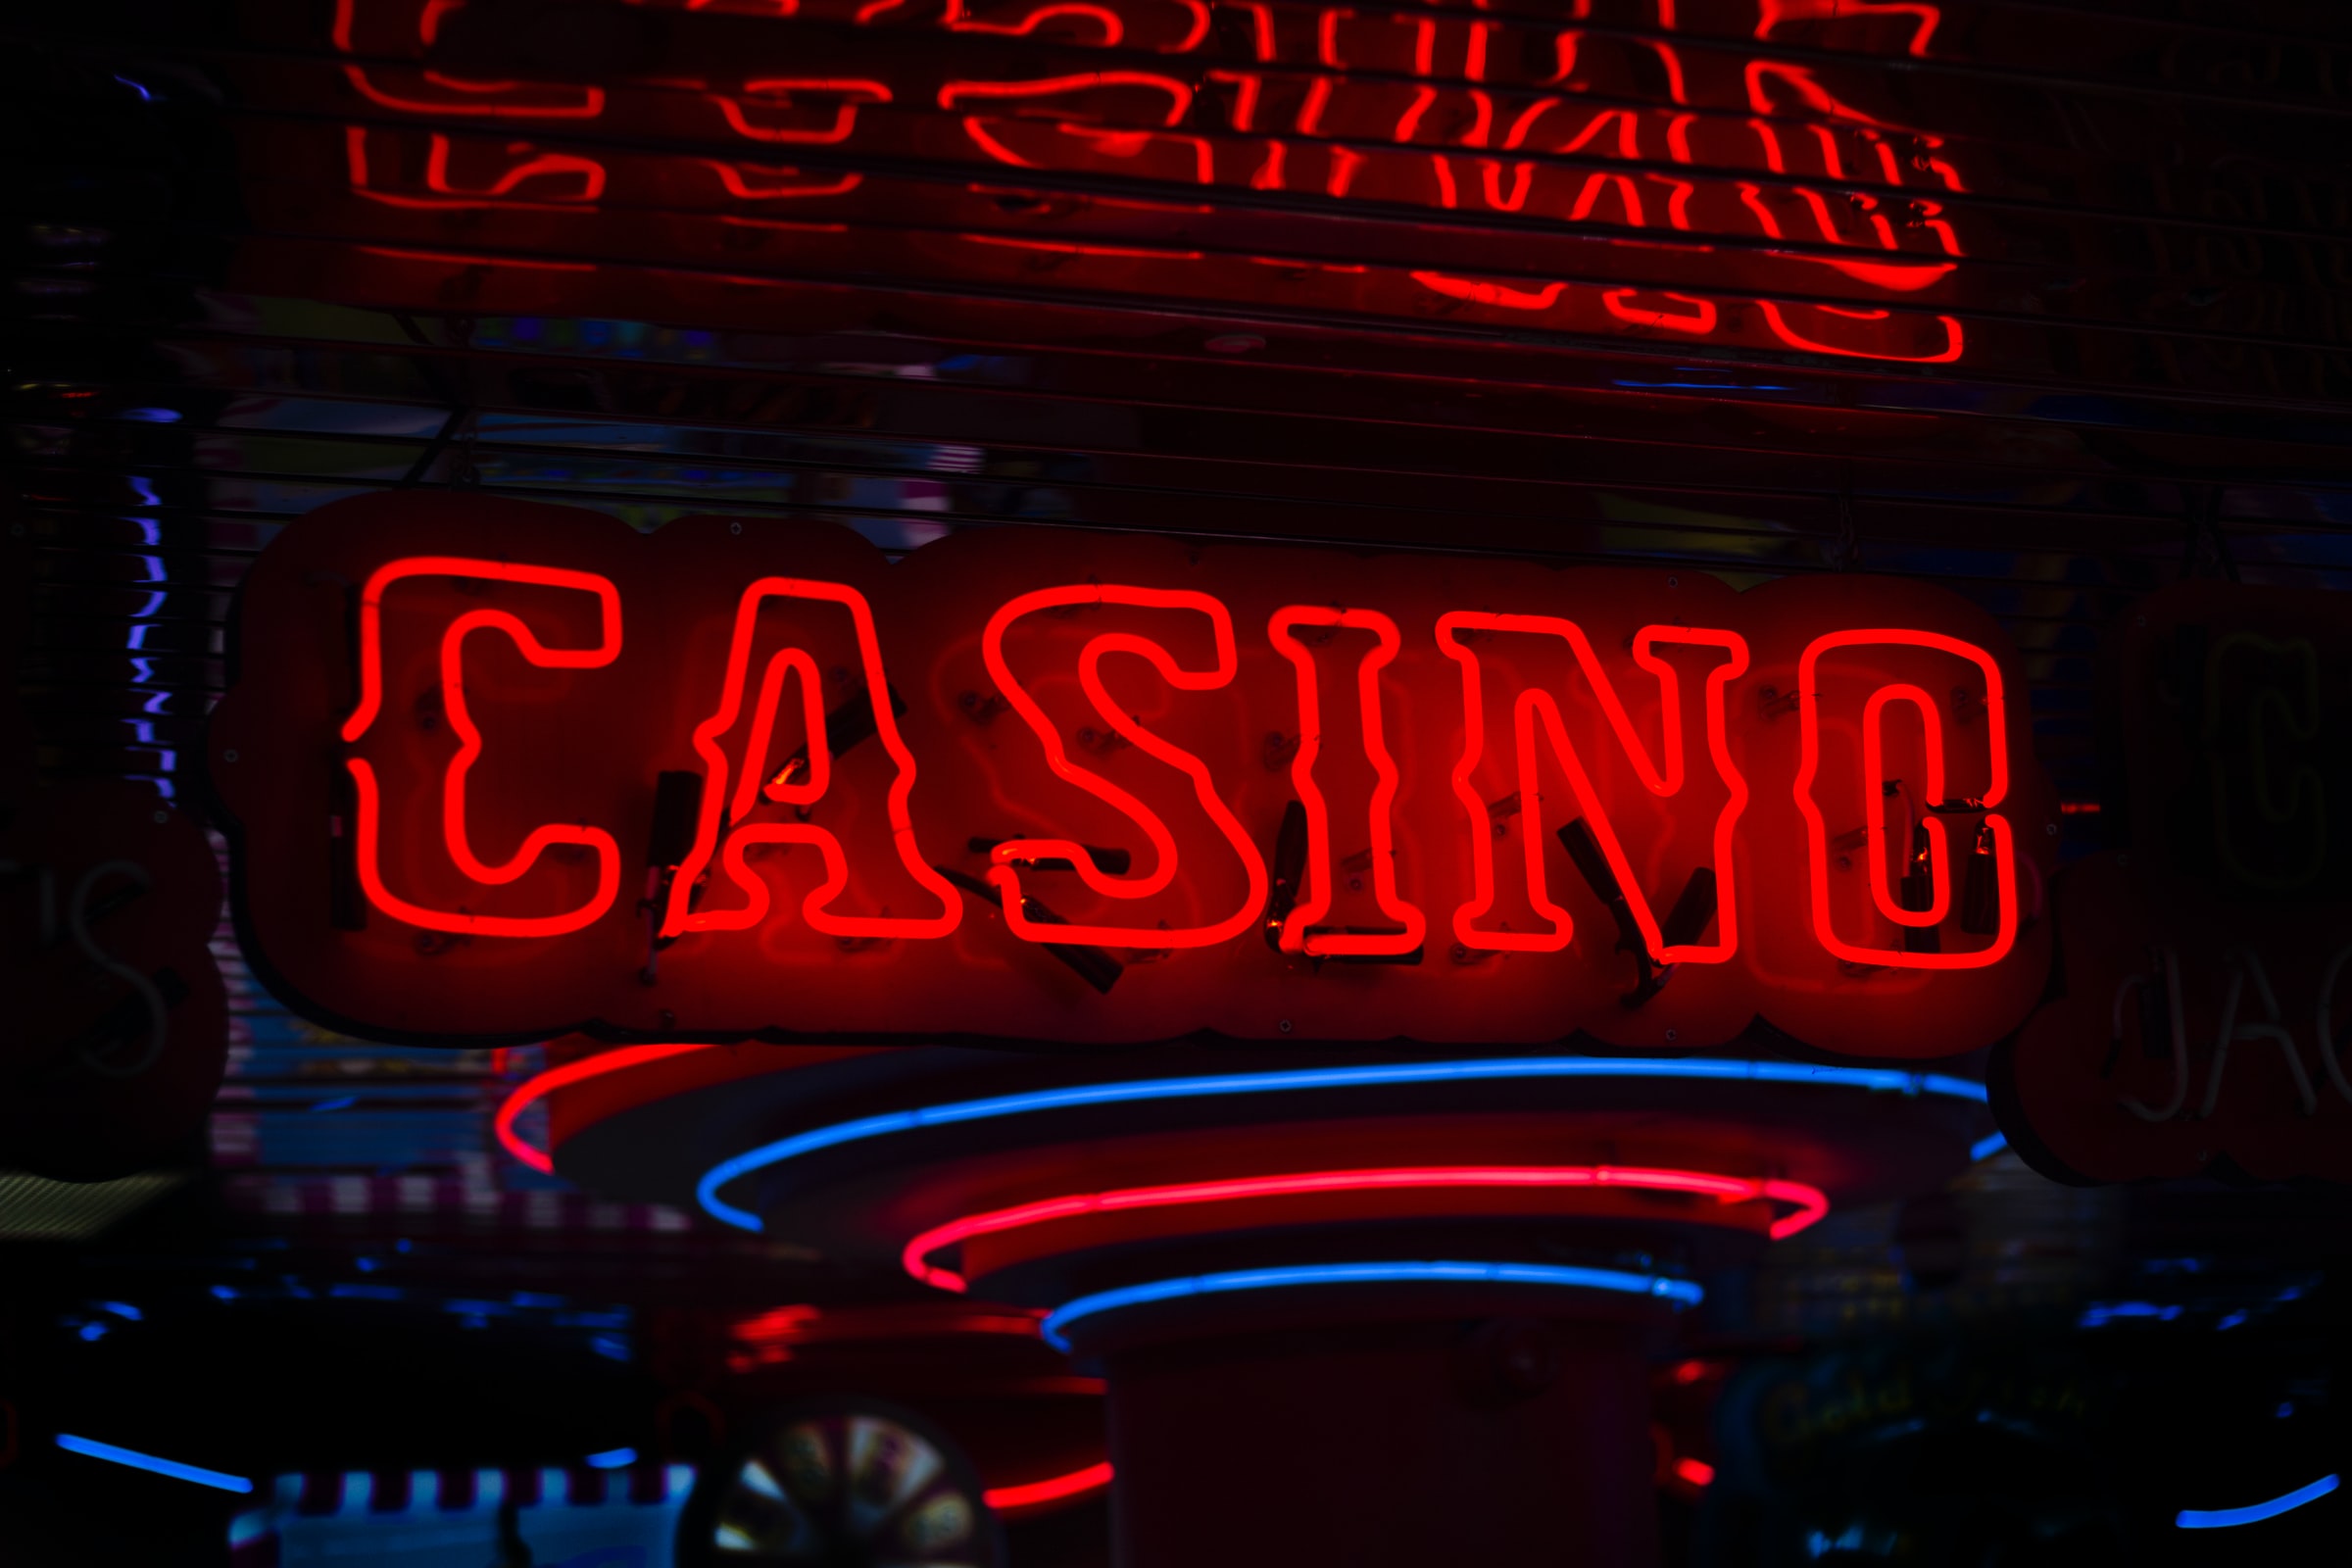 Casino néon enseigne au néon dans le noir